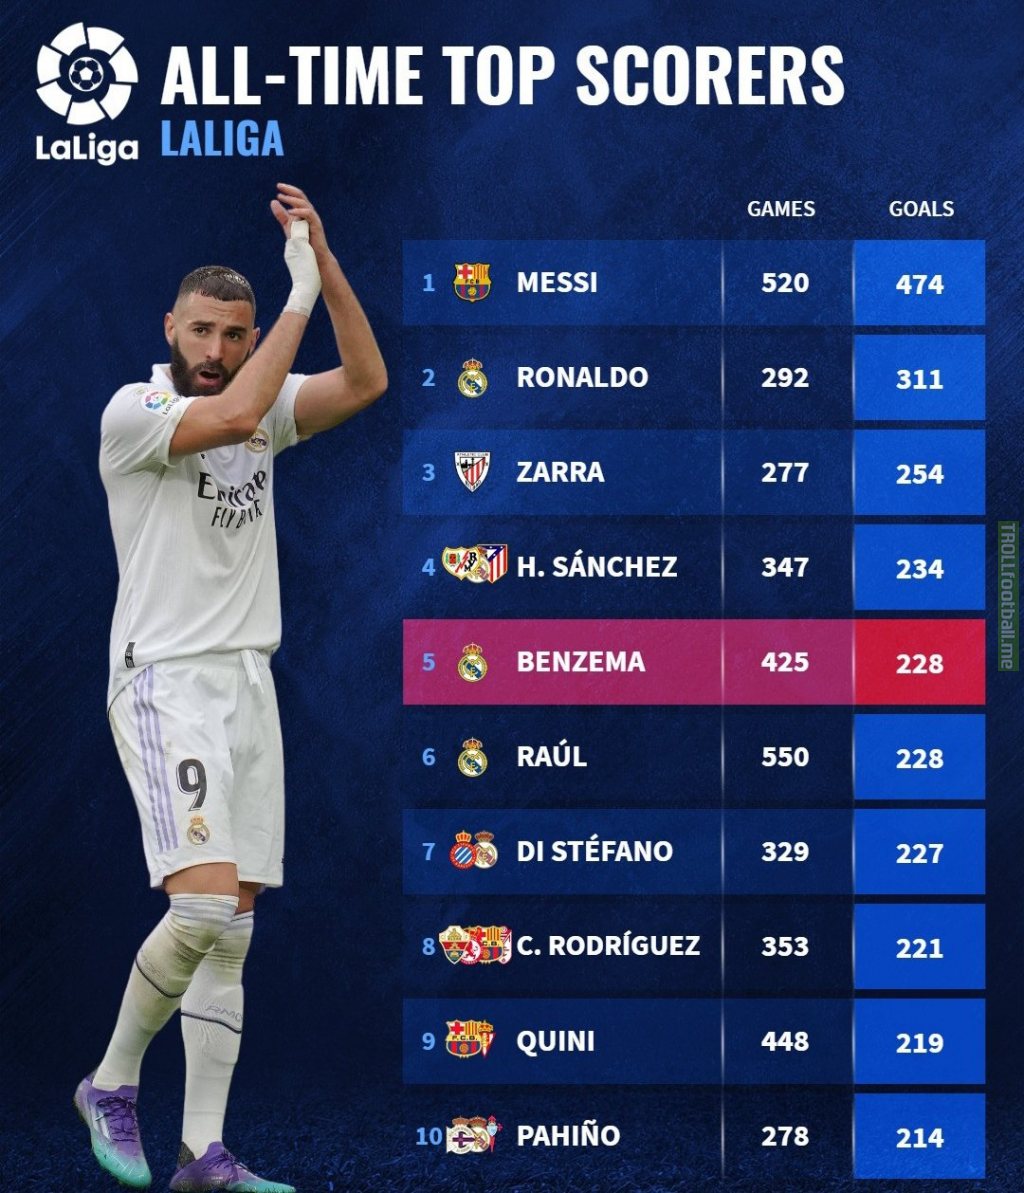 Karim Benzema among the all-time top scorers of La Liga.